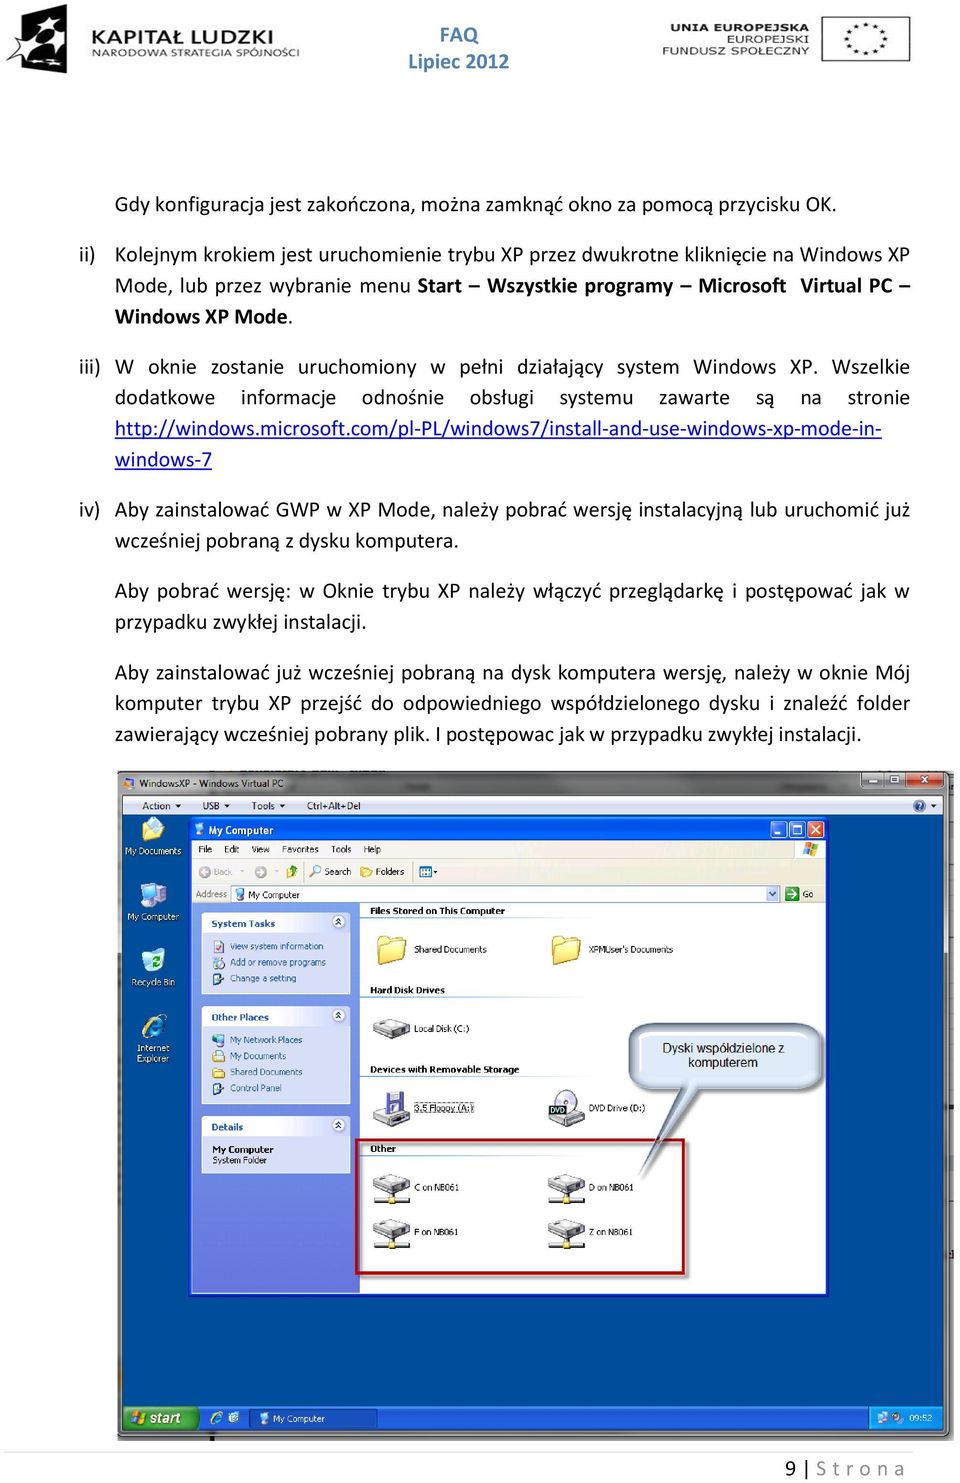 iii) W oknie zostanie uruchomiony w pełni działający system Windows XP. Wszelkie dodatkowe informacje odnośnie obsługi systemu zawarte są na stronie http://windows.microsoft.